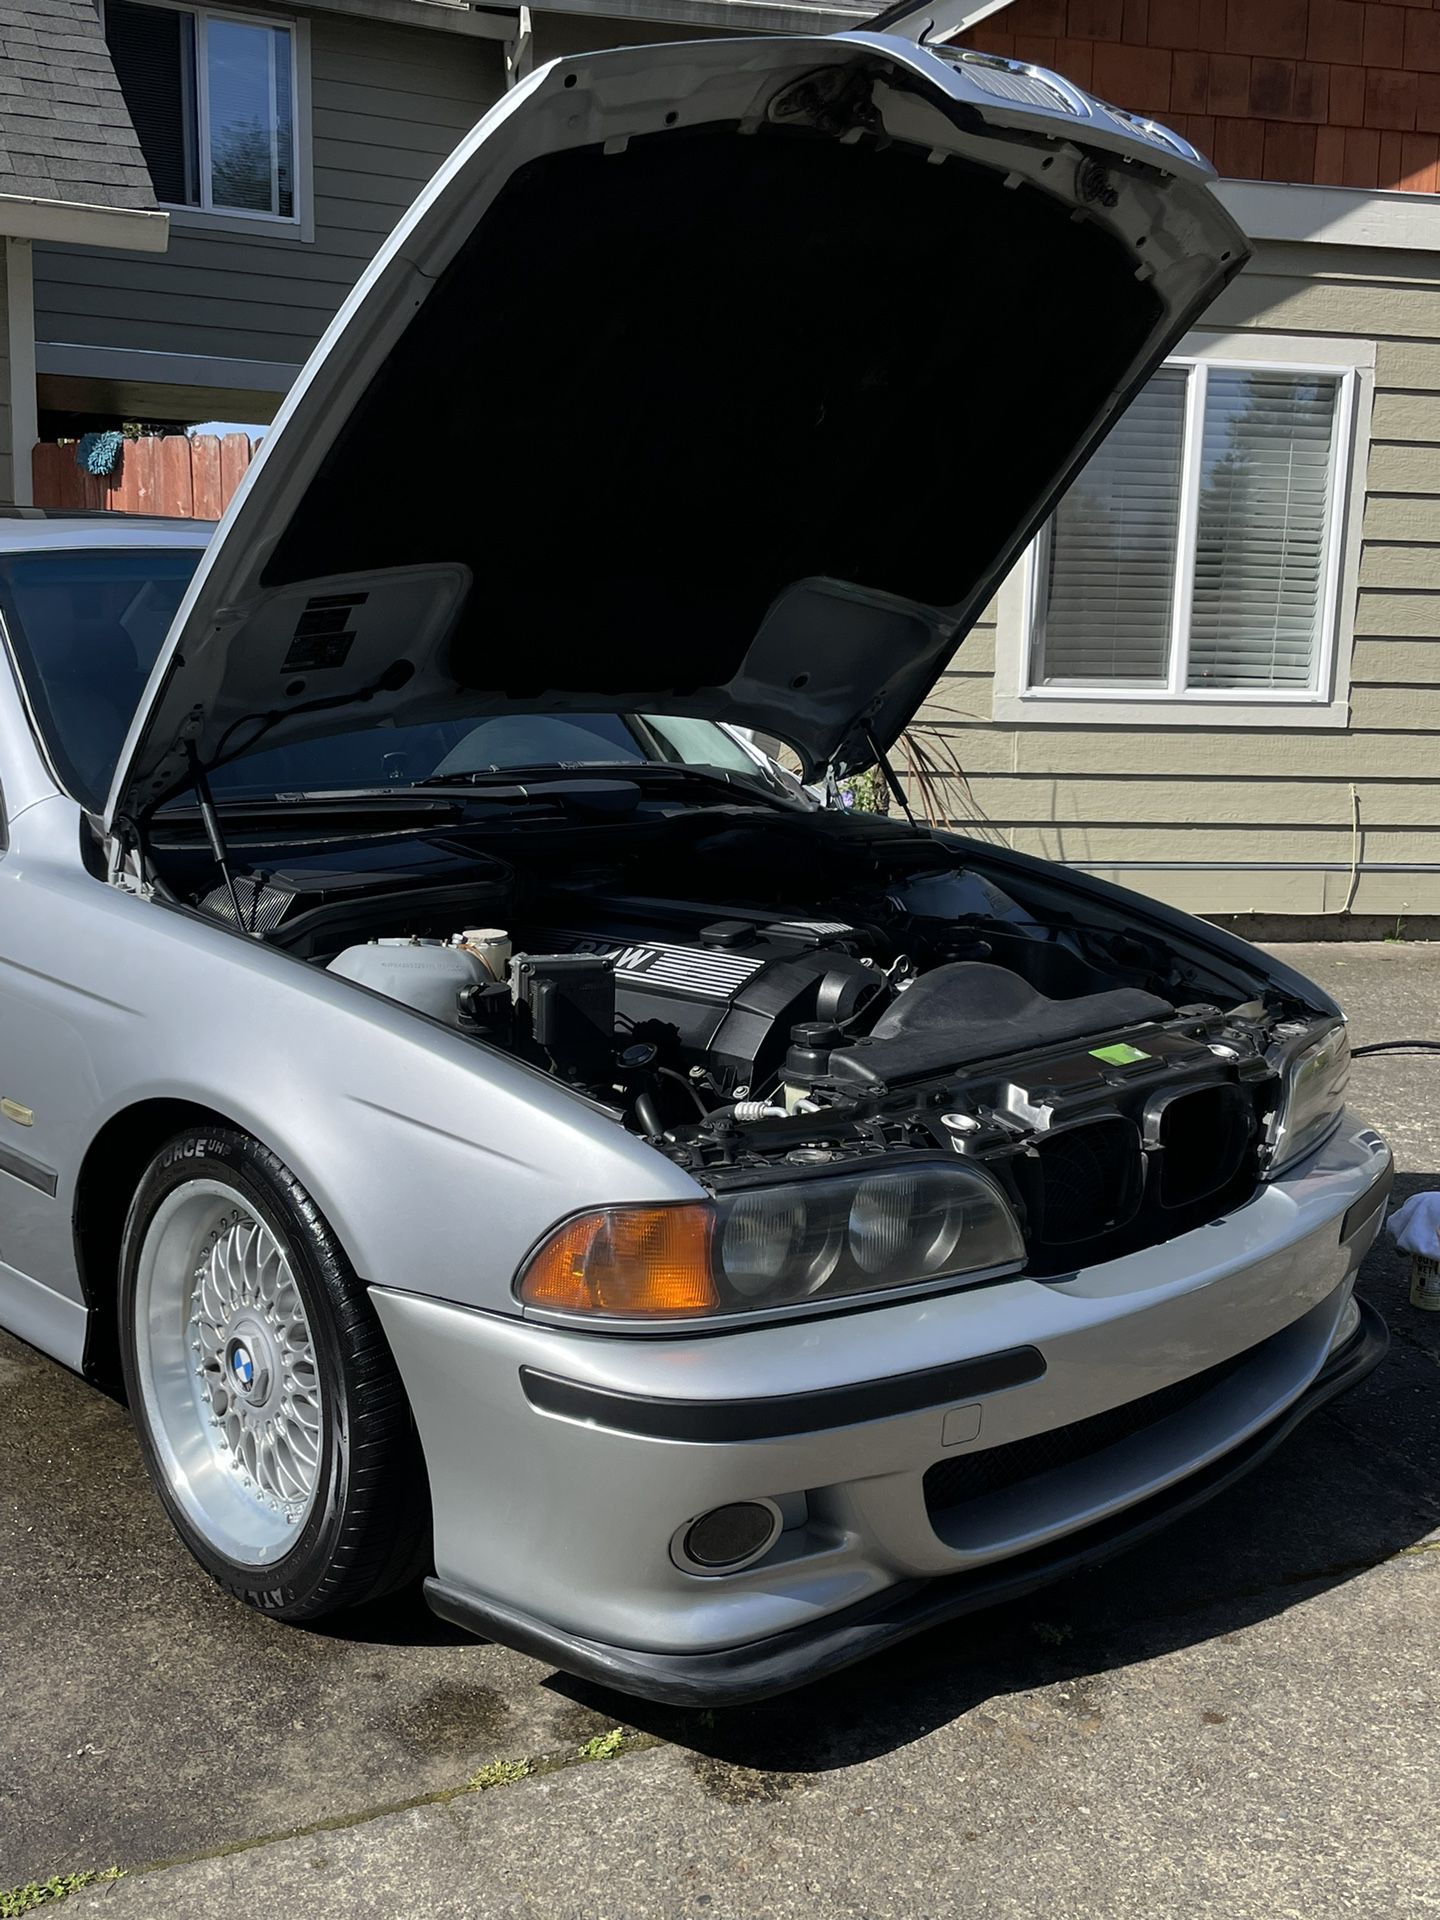 1998 BMW 528i